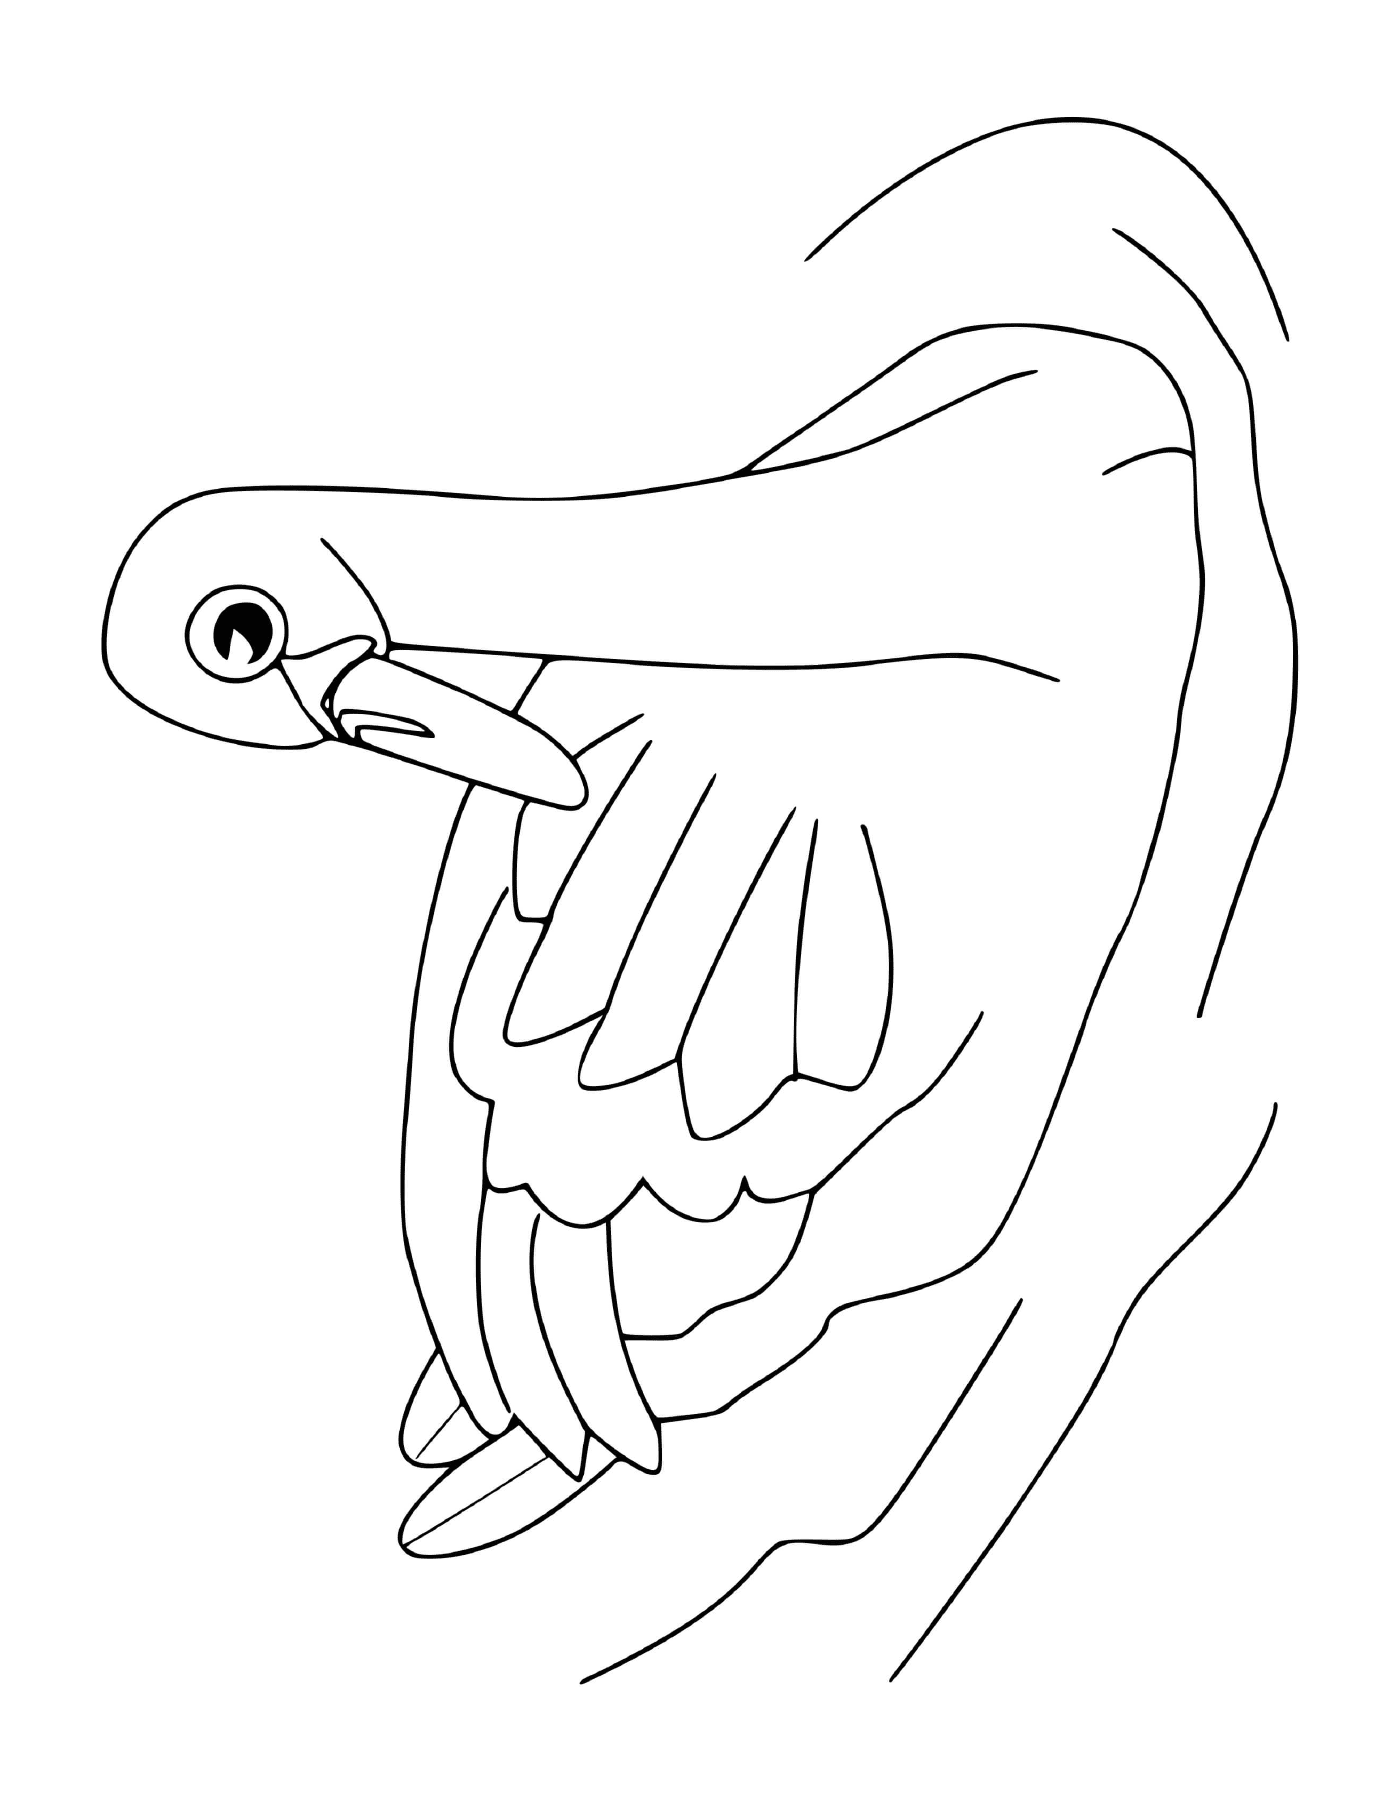  Cisne com asas expandidas 